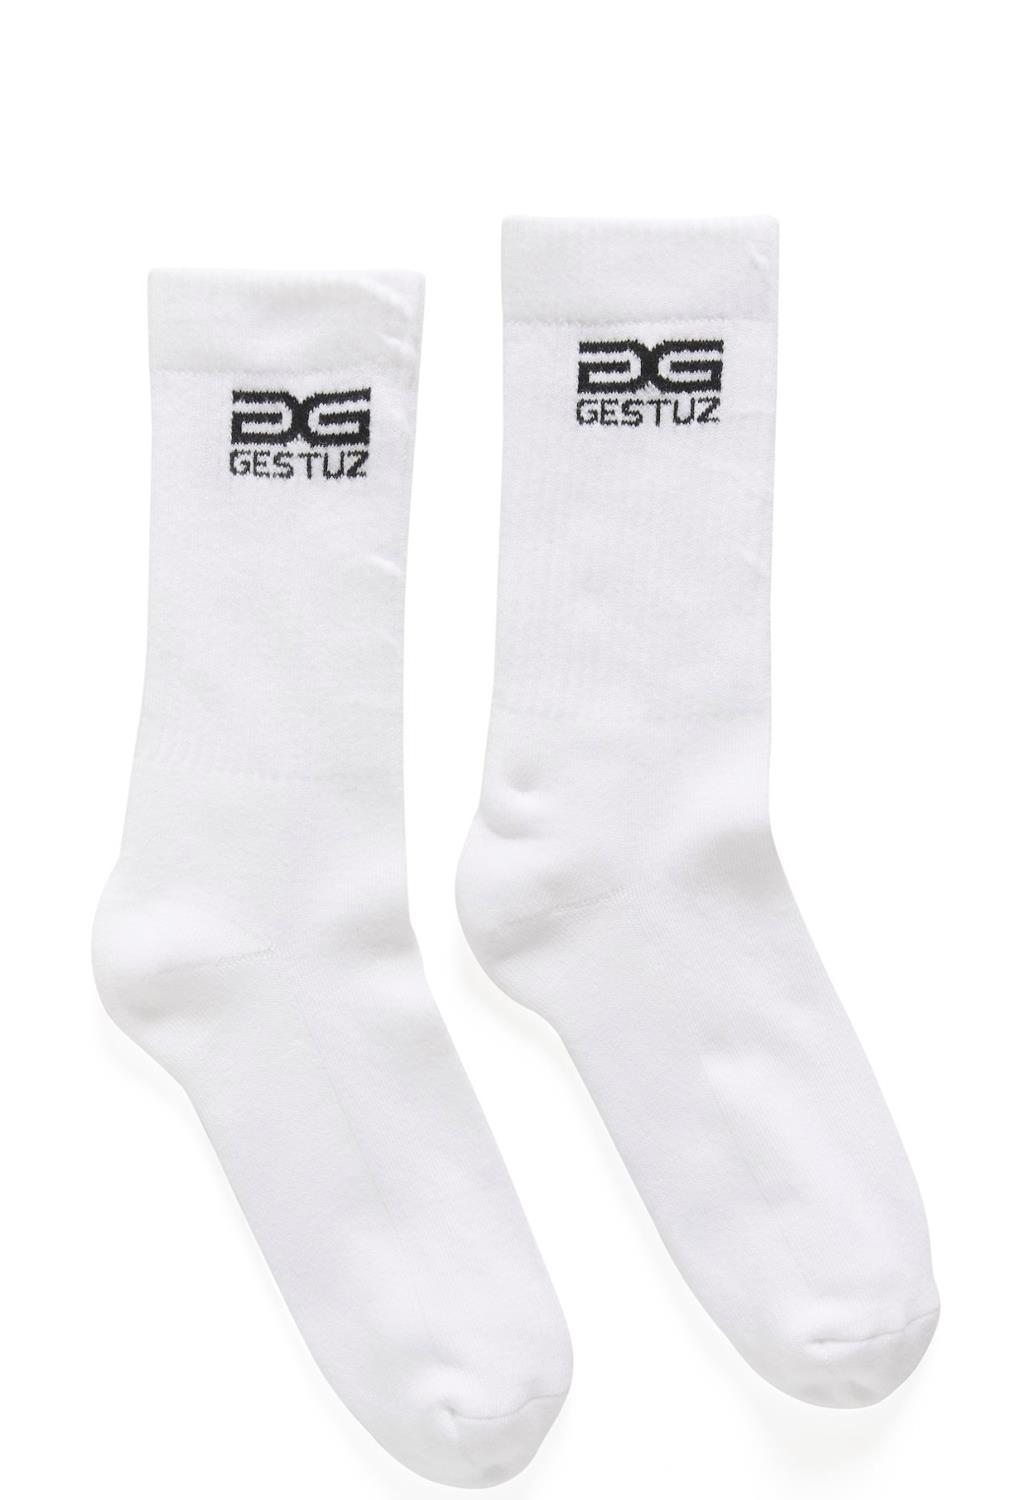 Gestuz new logo socks sort og hvit